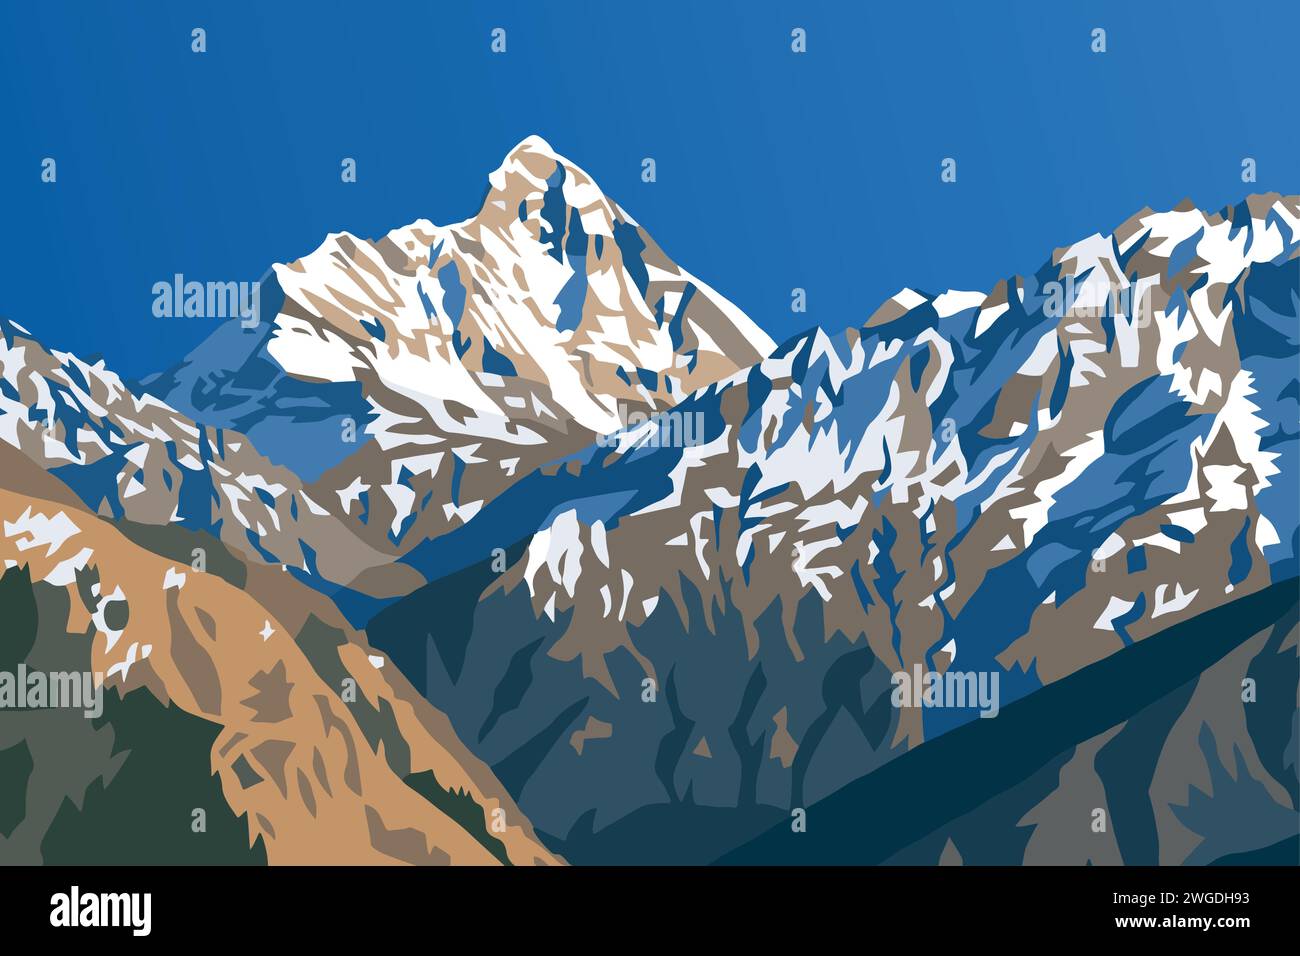 Mount Nanda Devi Vektor Illustration, einer der besten Berge im indischen Himalaya, gesehen von Joshimath Auli, Uttarakhand, Indien, indischer Himalaya Stock Vektor